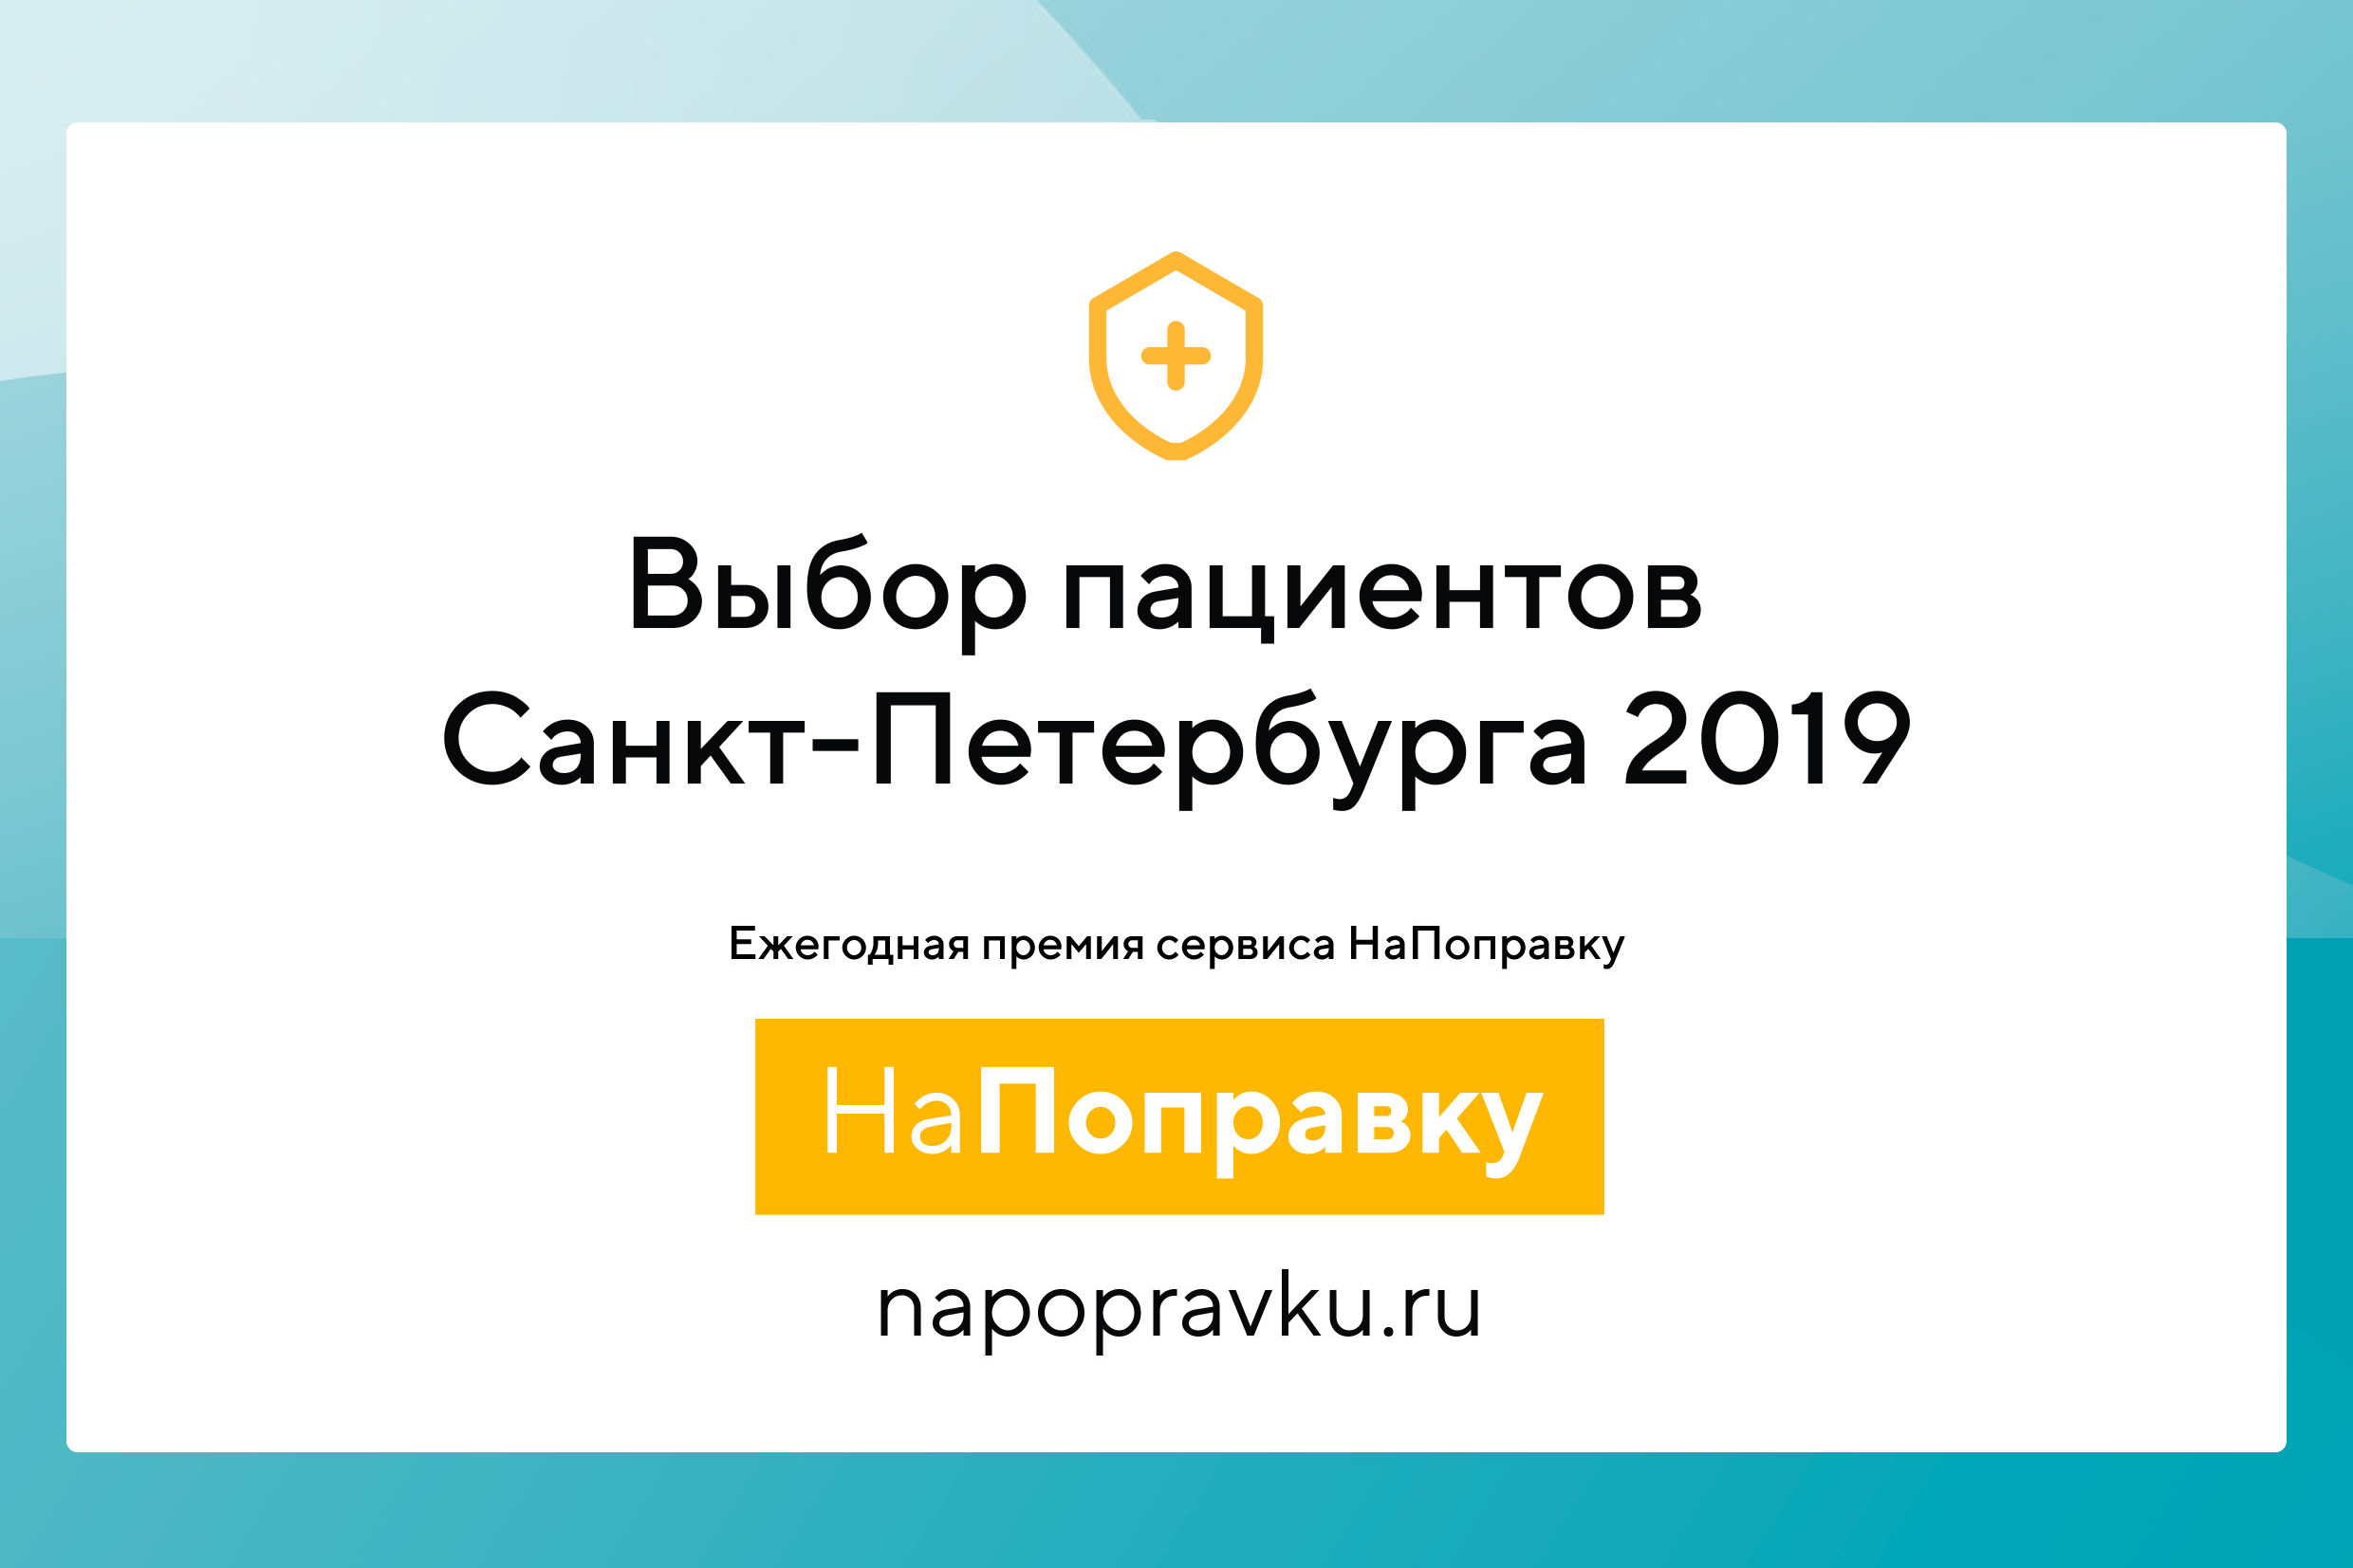 EMS вошла в рейтинг лучших частных клиник 2019 по версии сайта Напоправку.ру